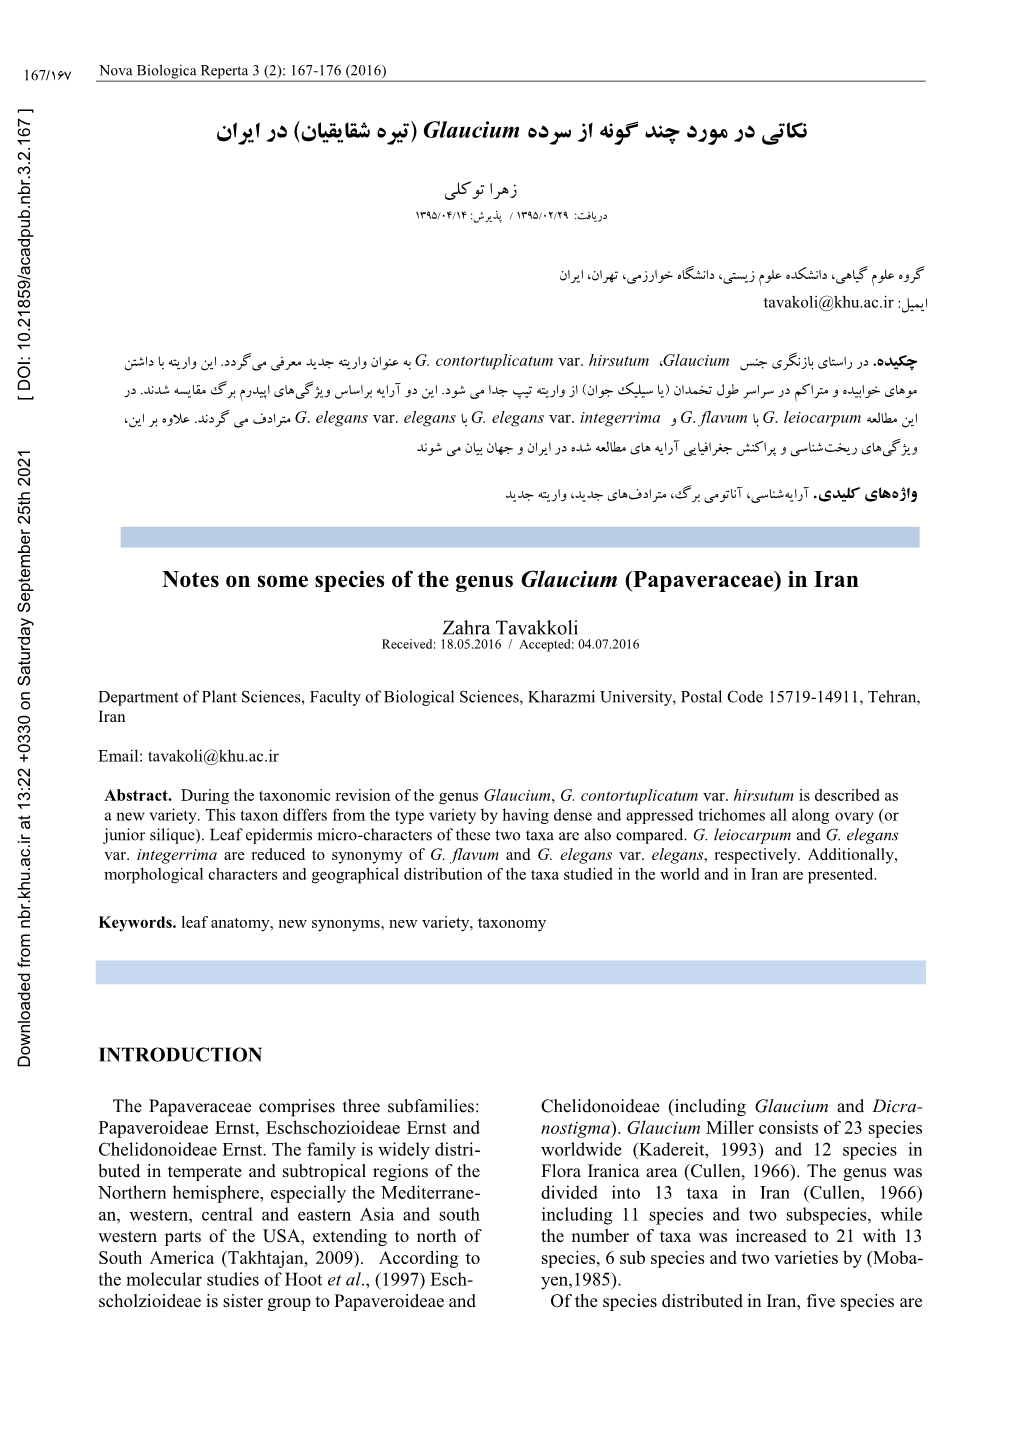 Notes on Some Species of the Genus Glaucium (Papaveraceae) in Iran